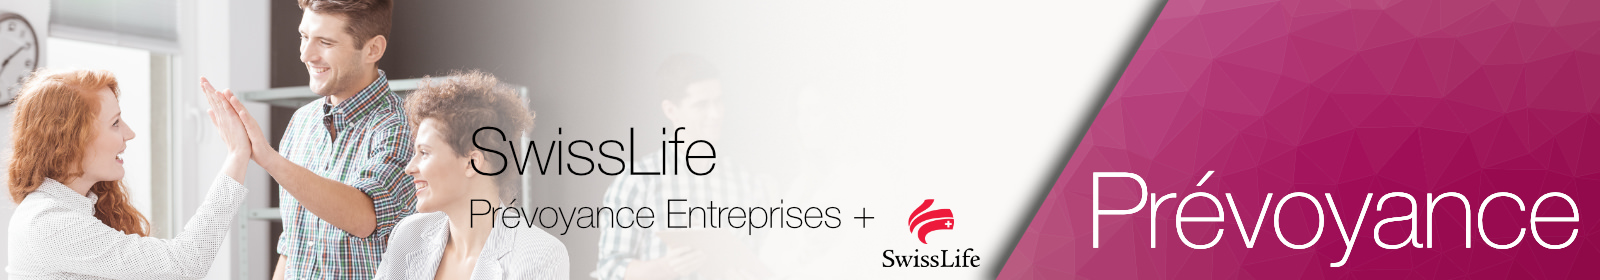 SwissLife Prévoyance Entreprises + Prévoyance